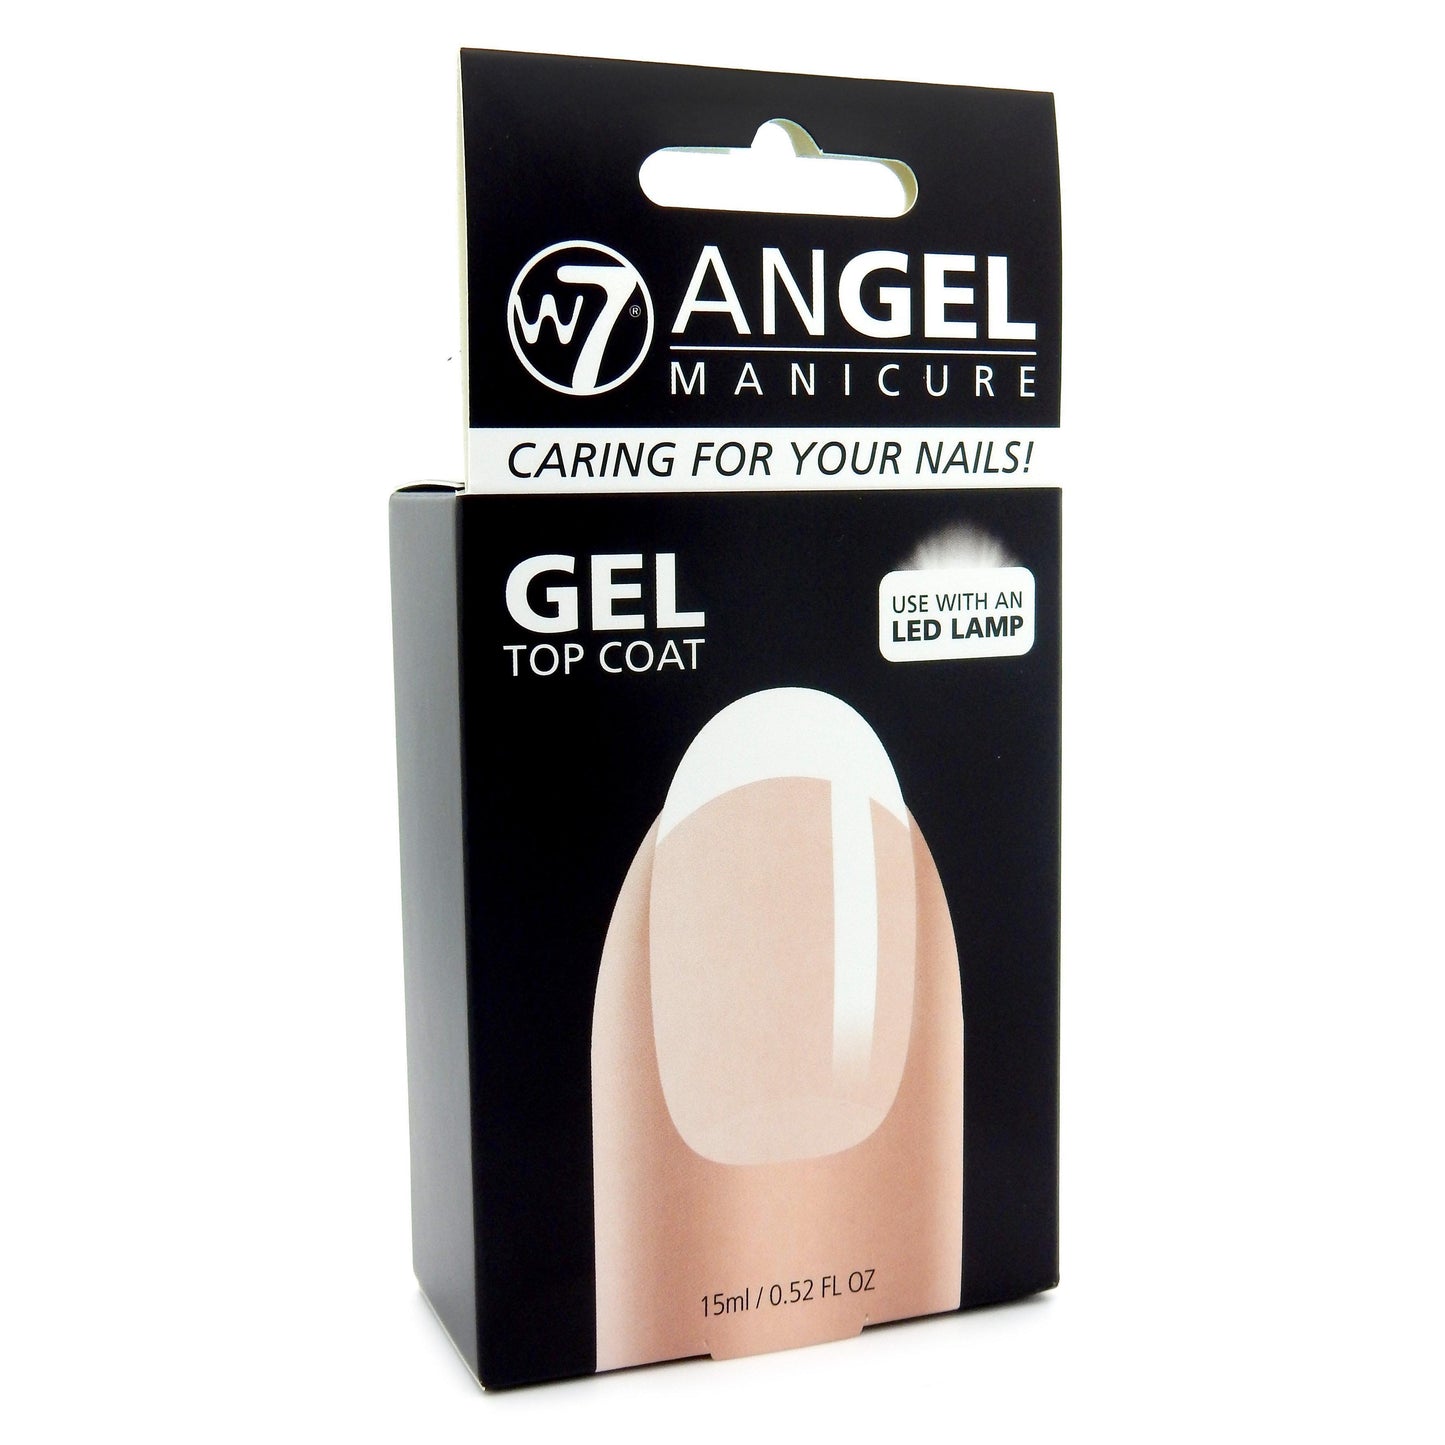 W7 Angel Manicure Gel Top Coat